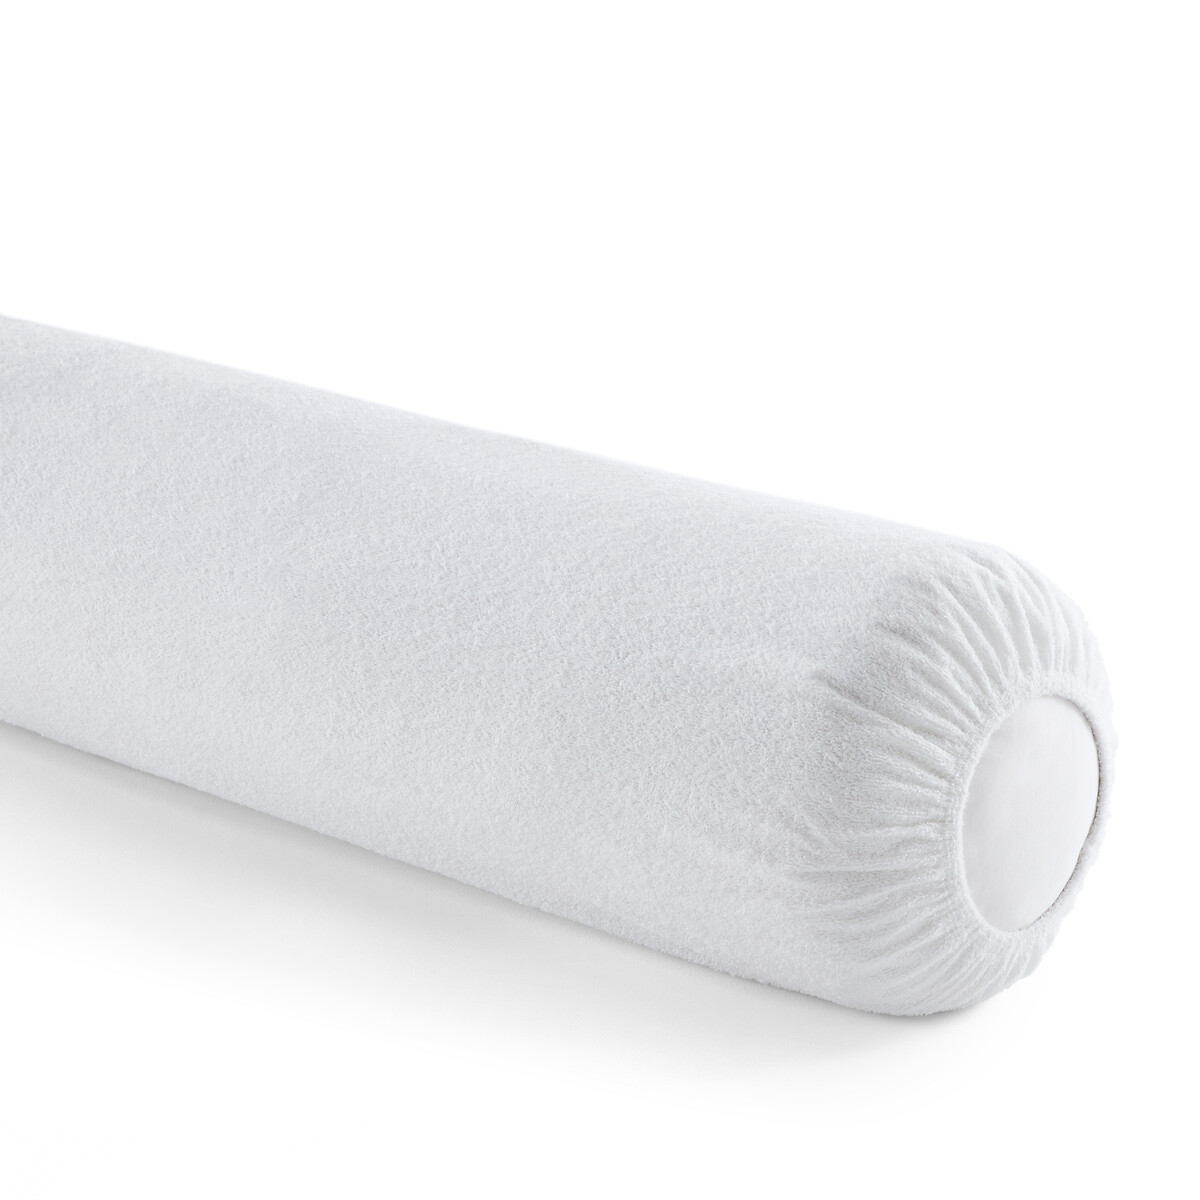 Чехол La Redoute Защитный на подушку-валик с обработкой против клещей длина: 140 см белый, размер длина: 140 см - фото 1